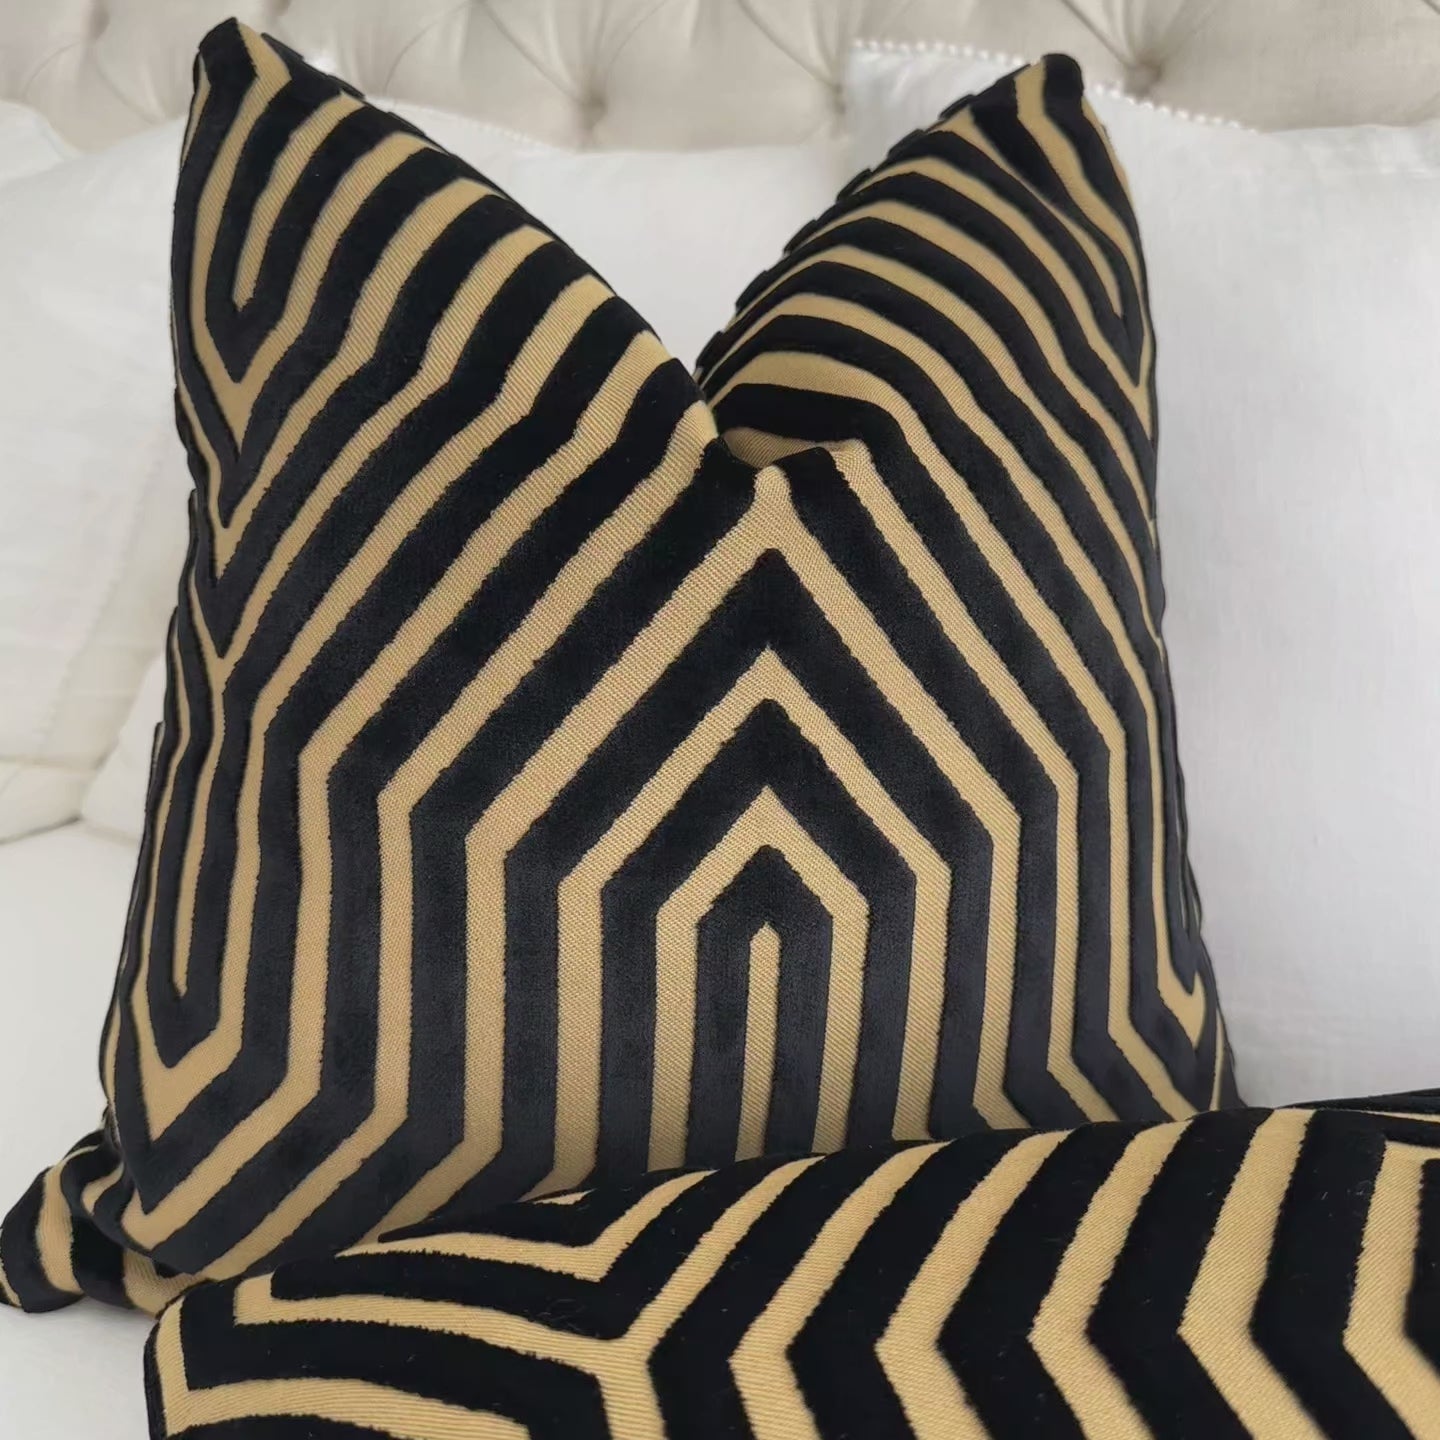 Schumacher Vanderbilt Velvet Tortoise Black Gold Cut Velvet Designer Luxury Decorative Throw Pillow Cover Product Video